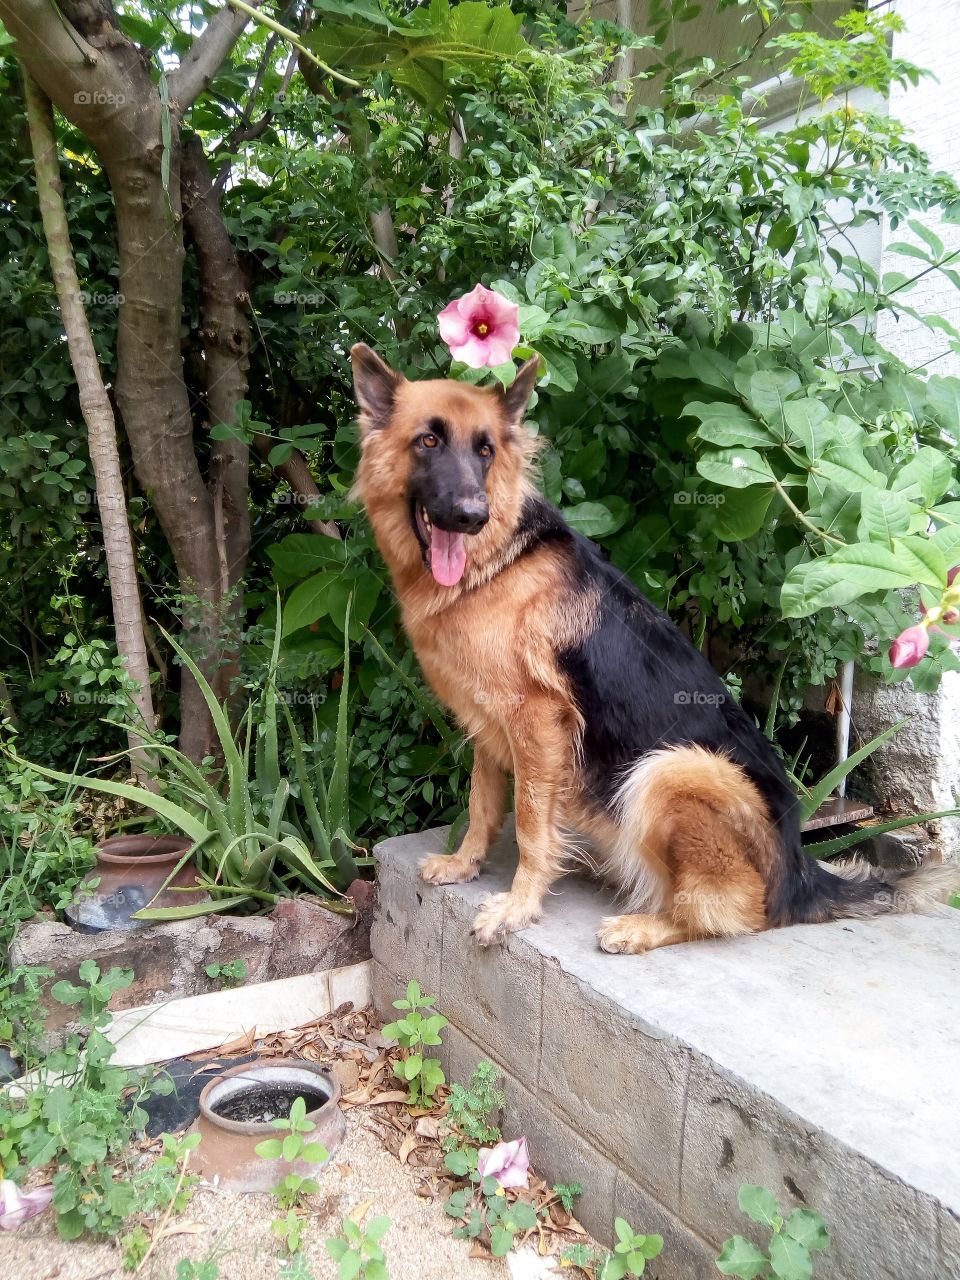 German shepherd on duty